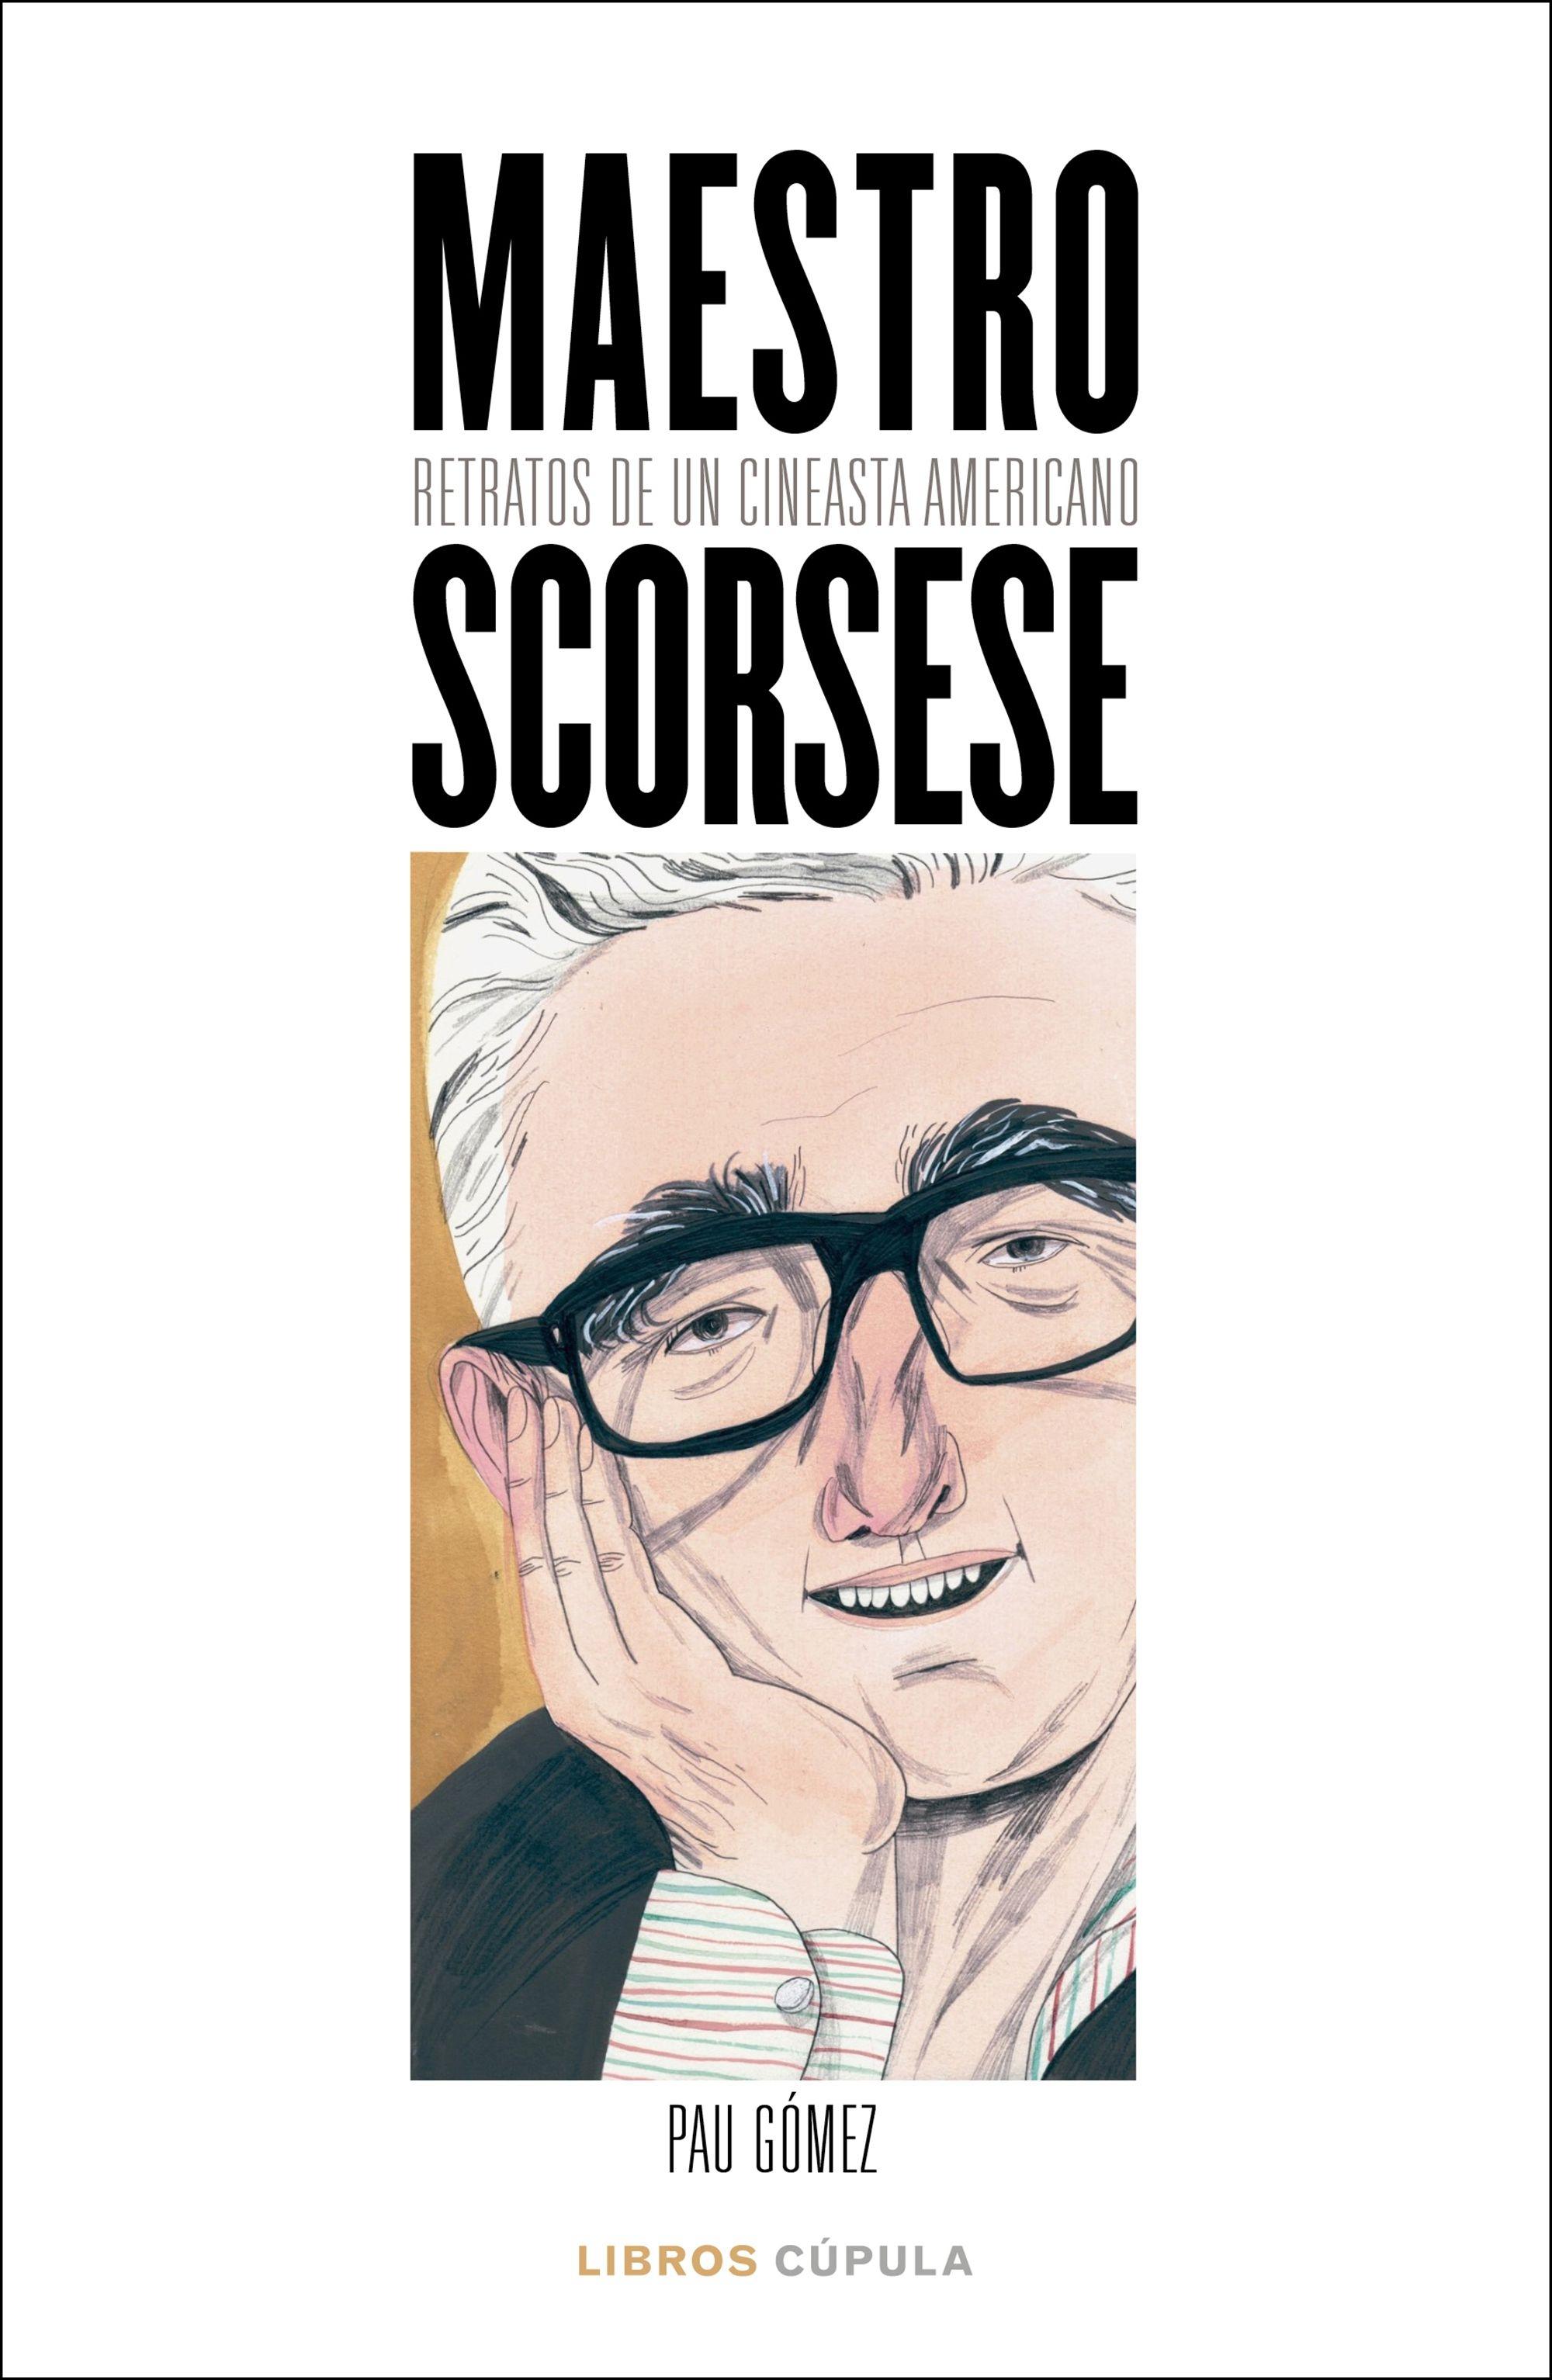 Maestro Scorsese "Retratos de un cineasta americano". 